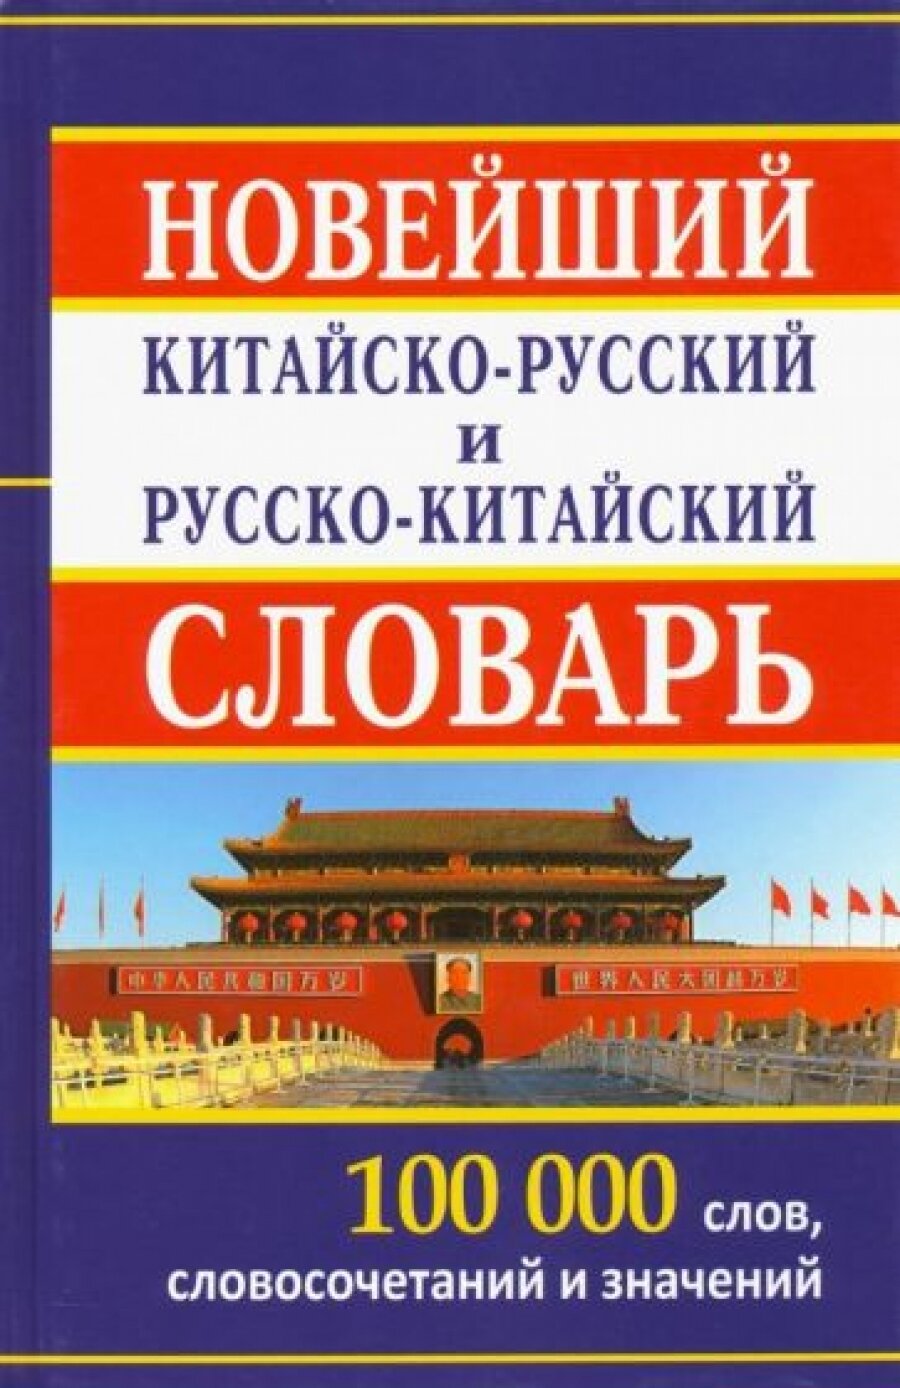 Китайско-русский, русско-китайский словарь. 100 000 слов и словосочетаний. /Левина.